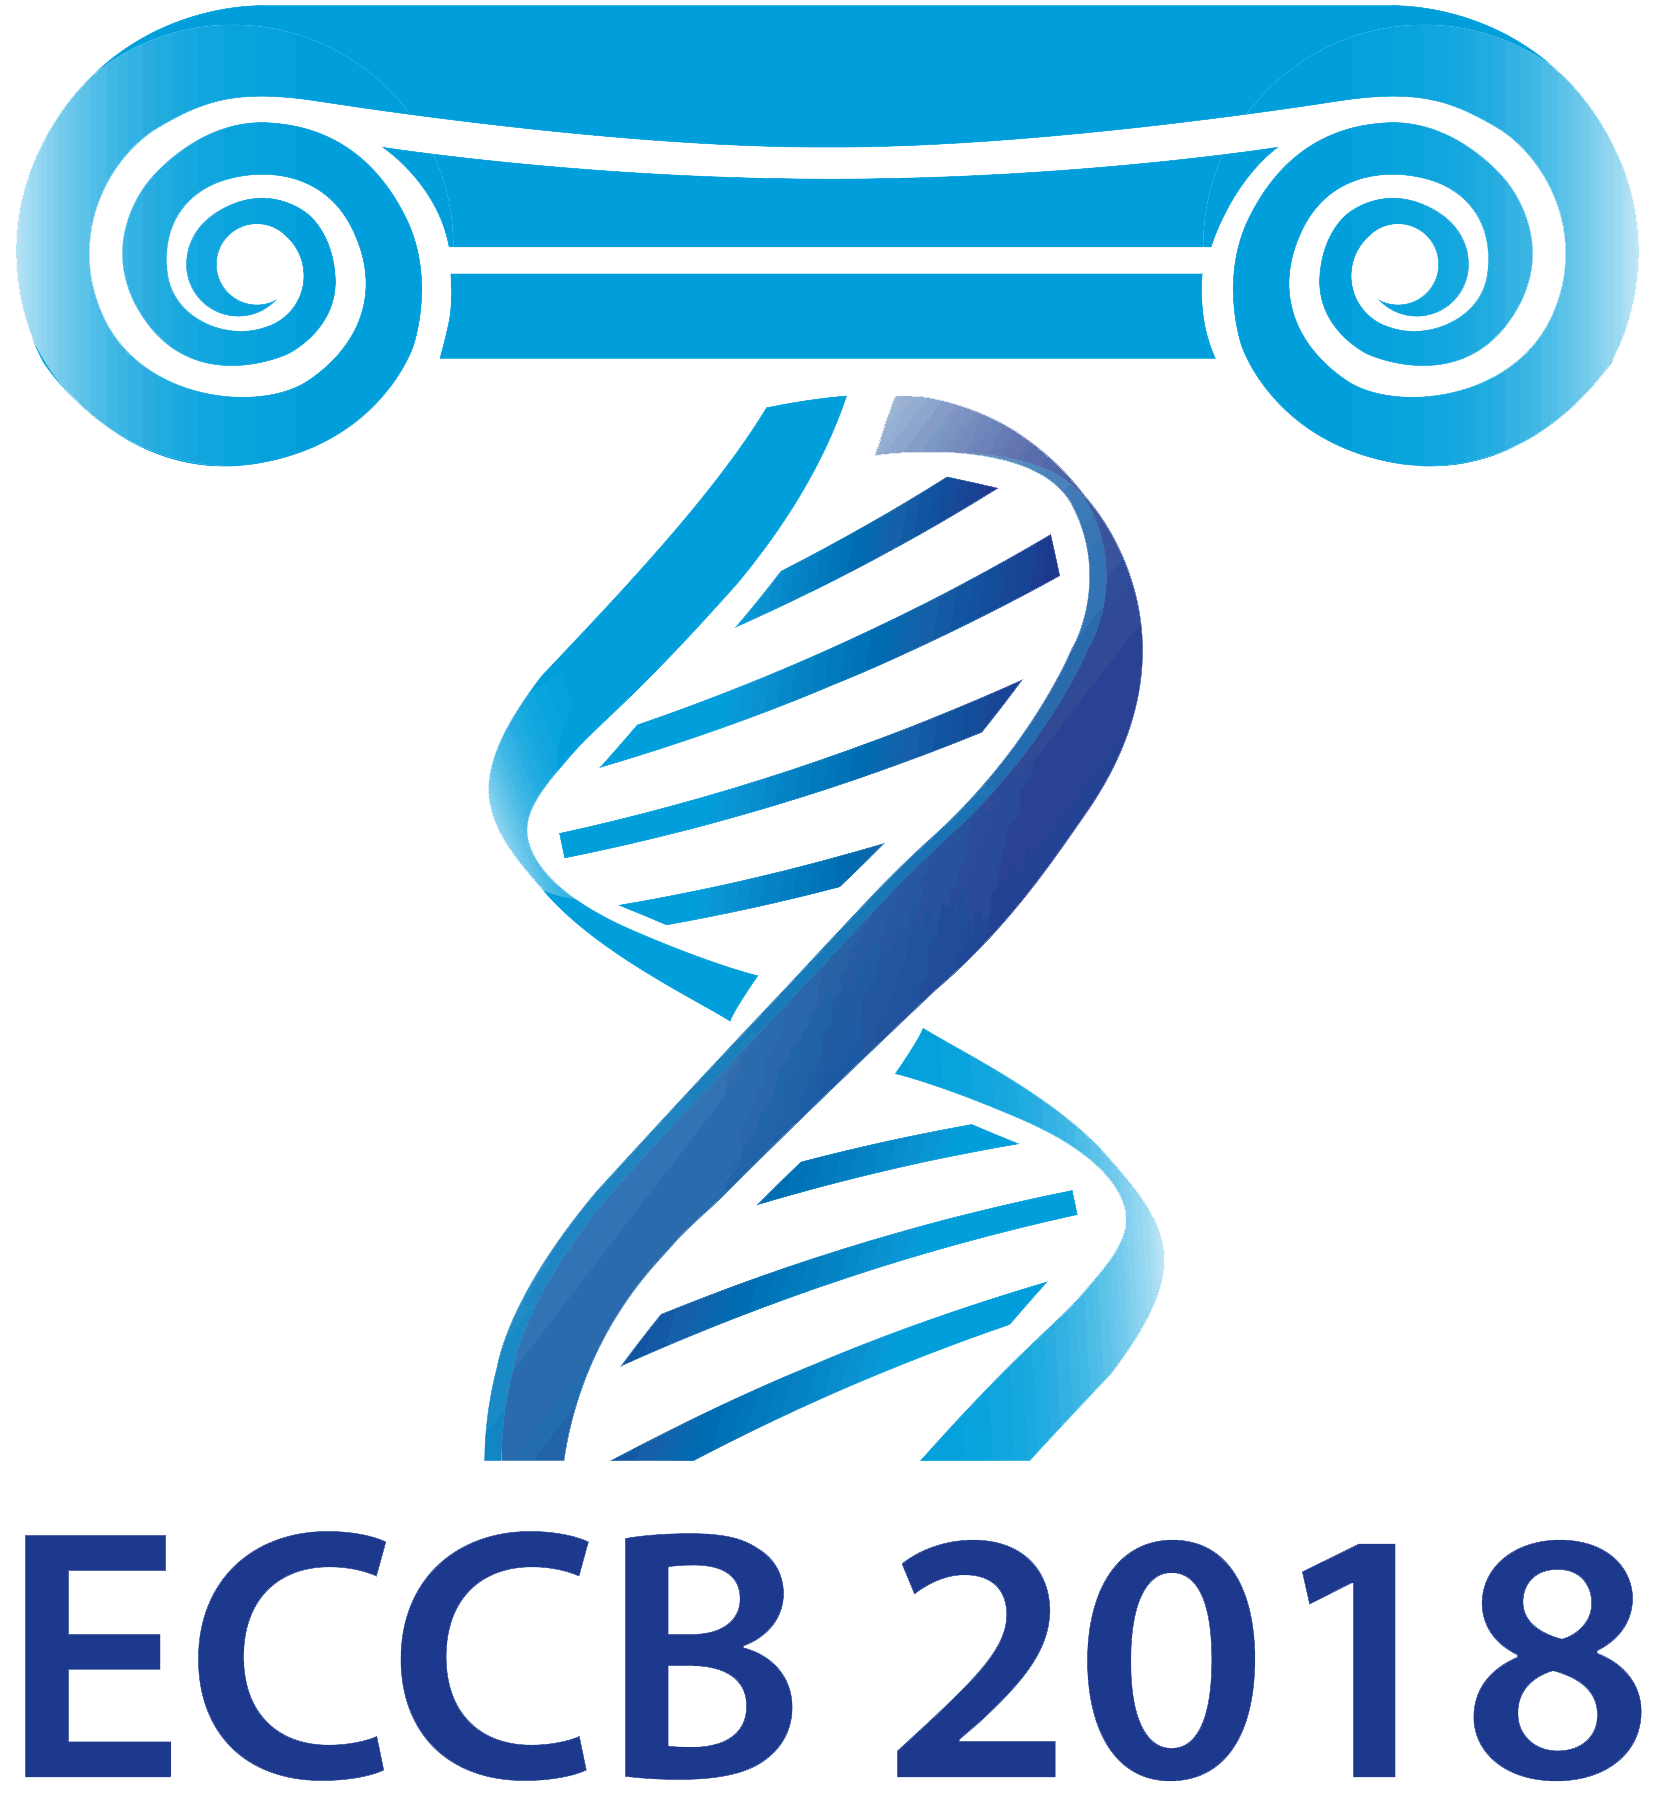 ECCB 2018, Athens, Greece, 8-12 September